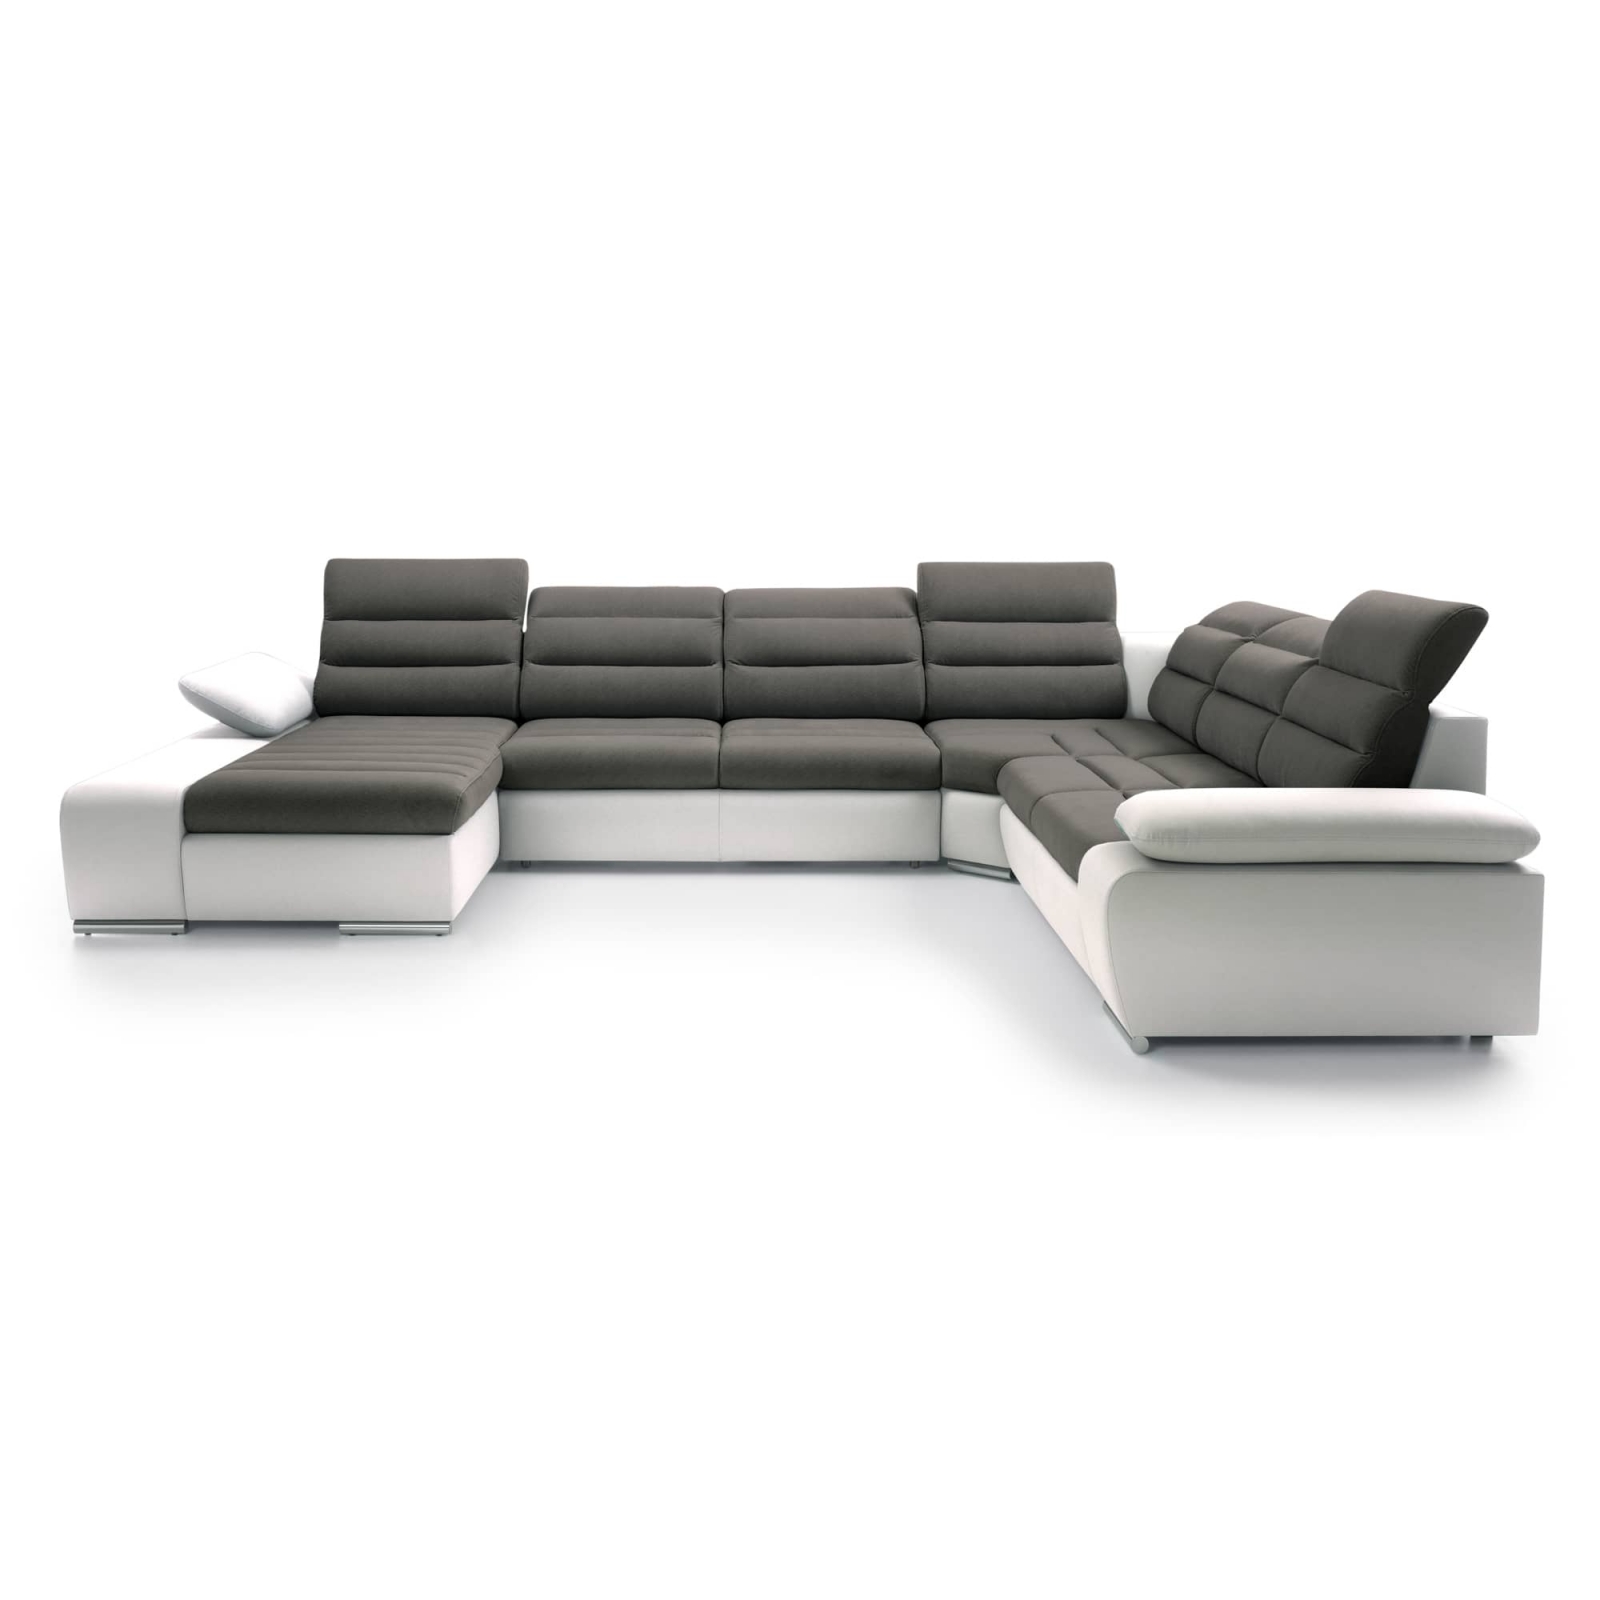 Canapé d'angle blanc design pour extérieur imitation cuir - 8895